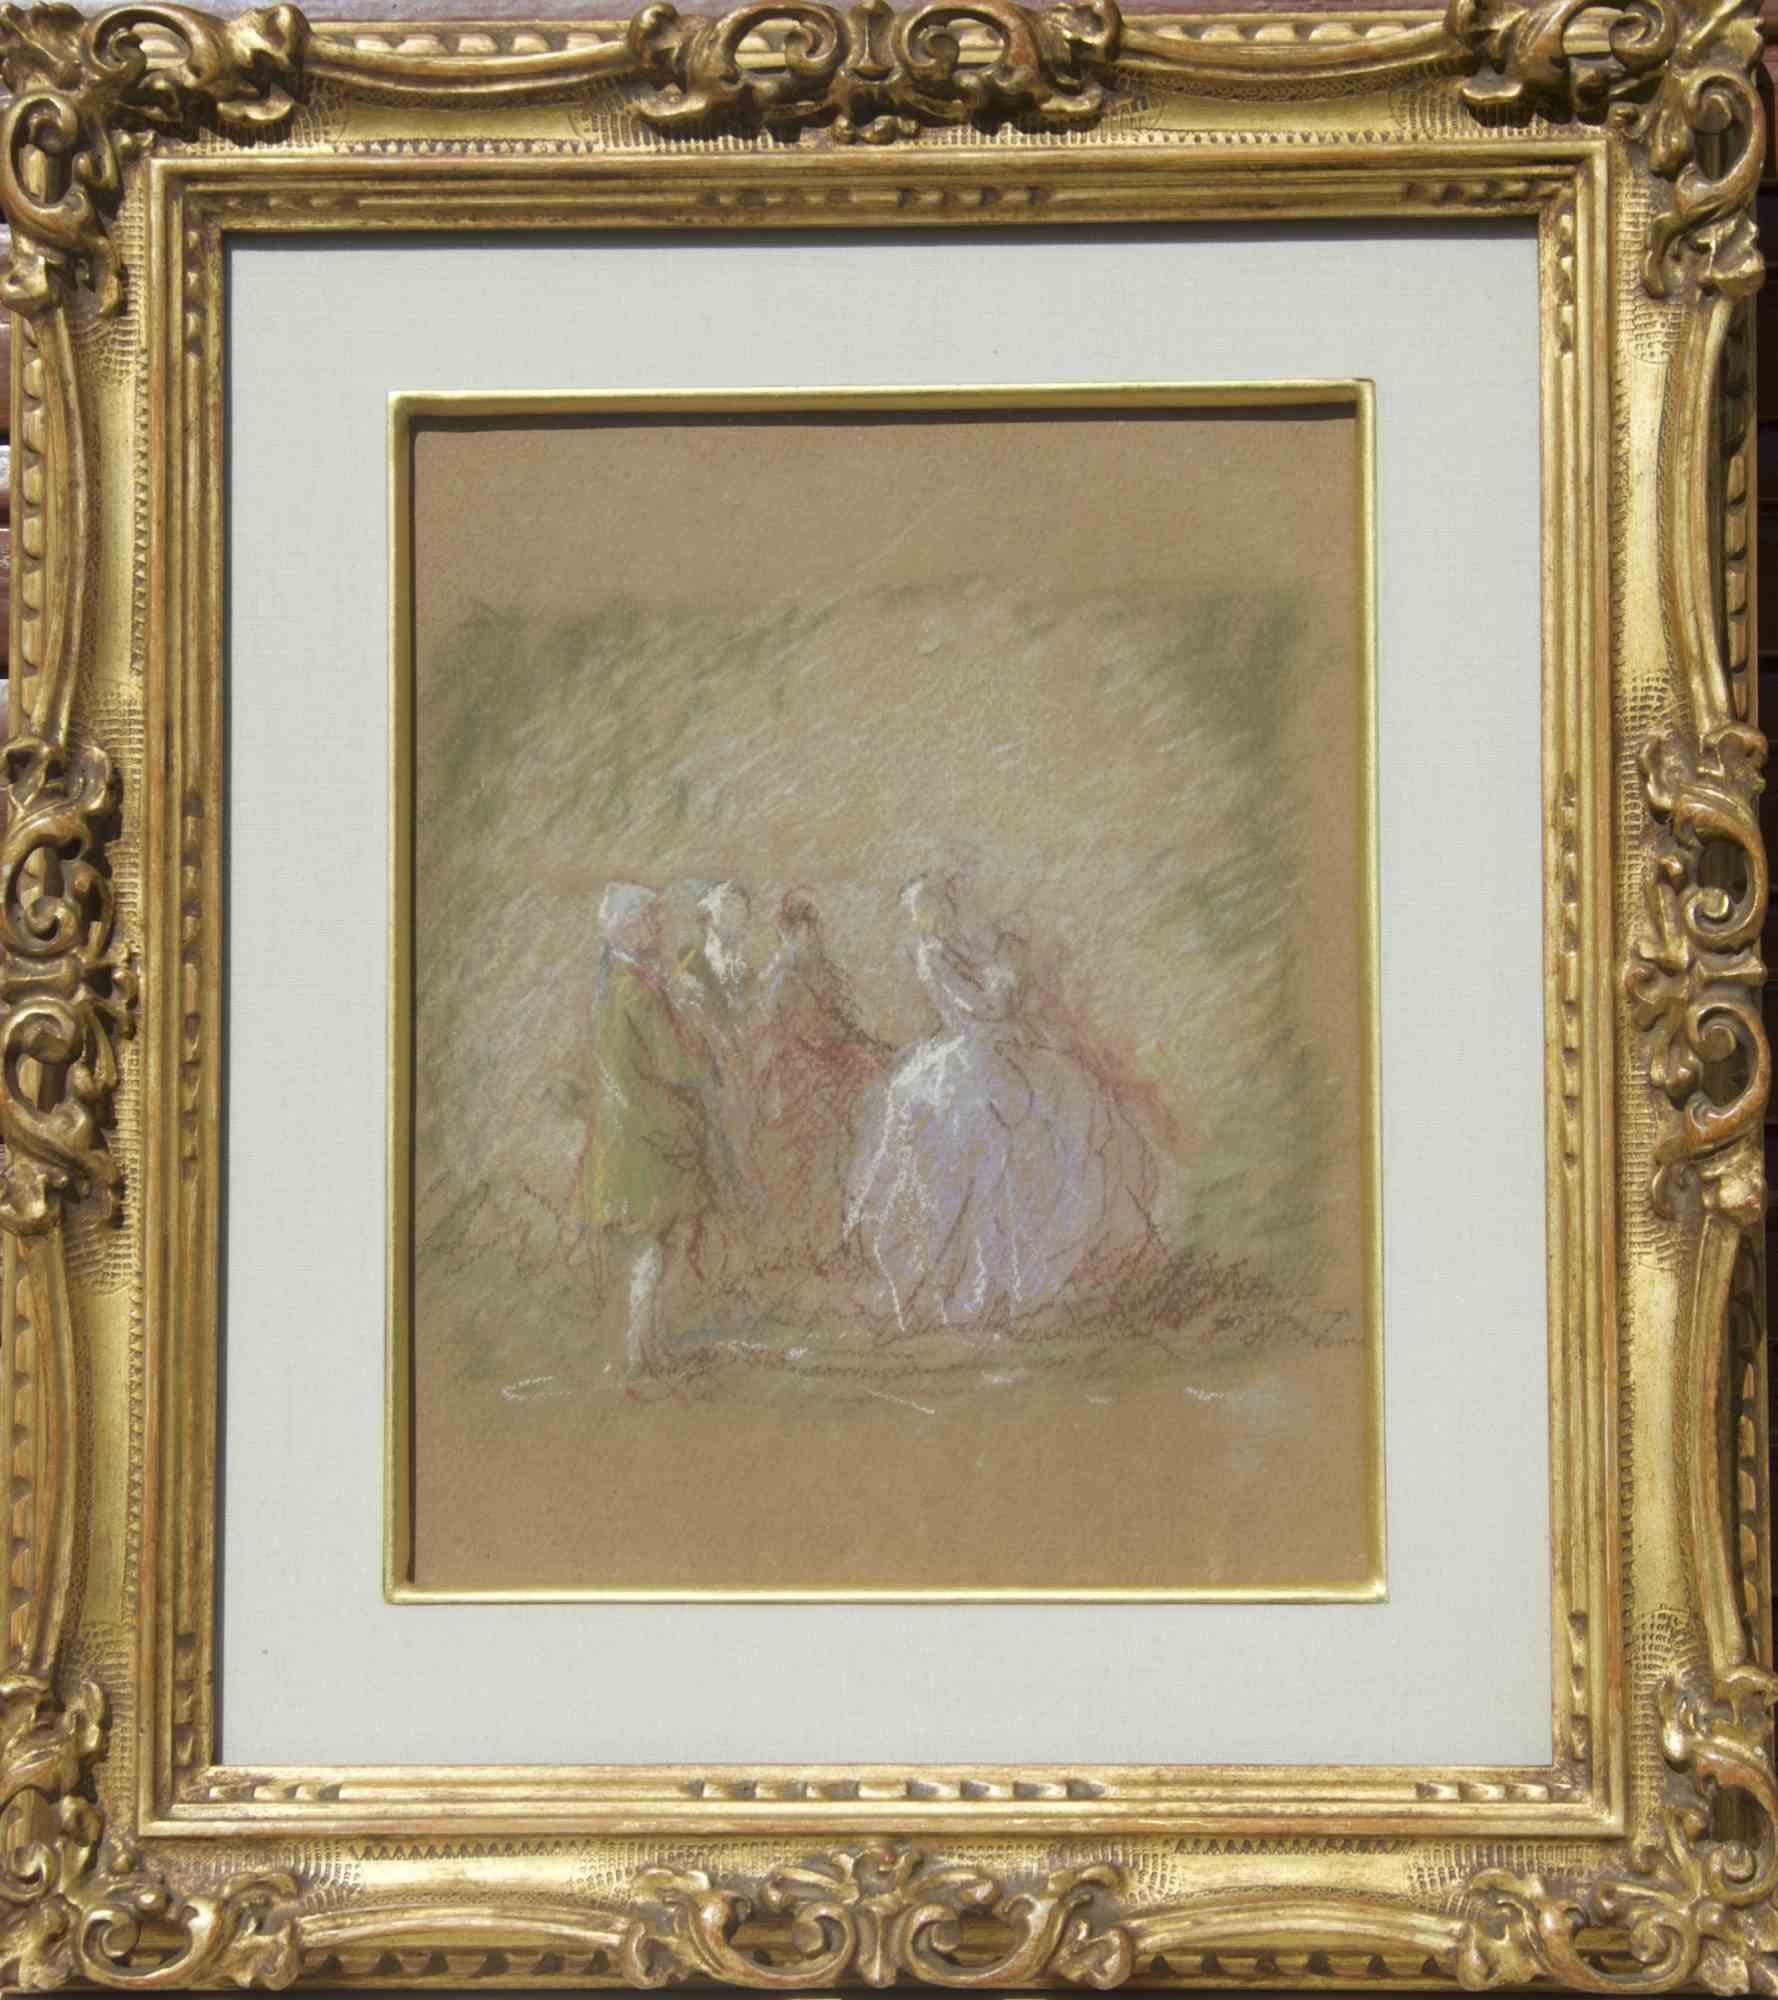 Szene mit Figuren ist ein schönes Pastell auf Karton, das Ende des 19. Jahrhunderts entstand und dem italienischen Künstler Gaetano Previati zugeschrieben wird.

Das Stück ist in gutem Zustand. Inklusive Rahmen.